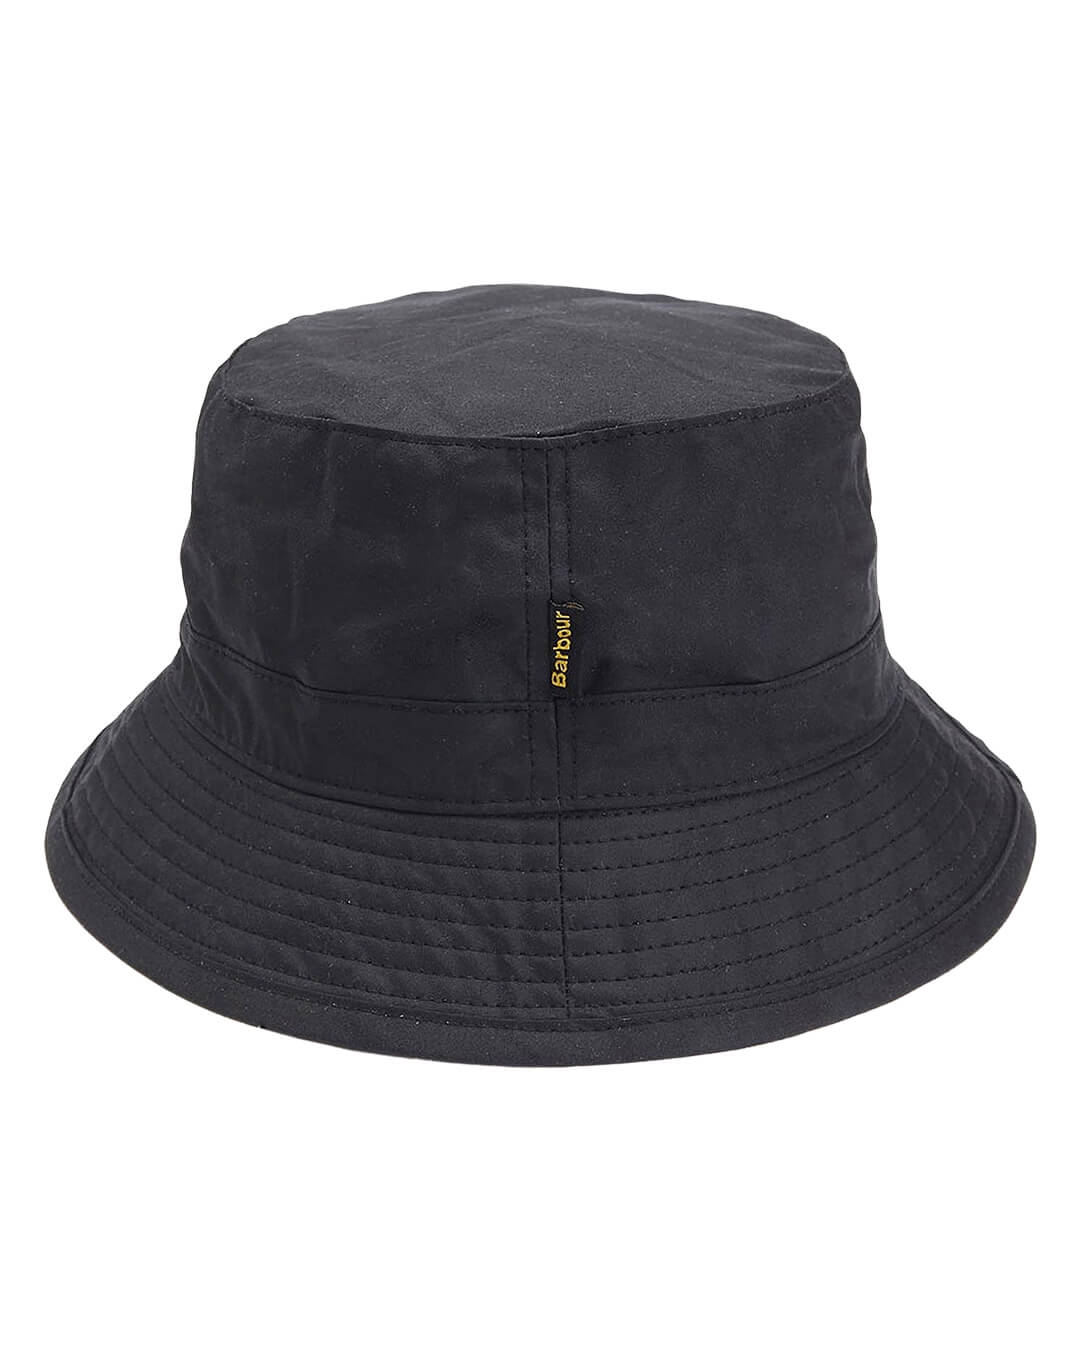 Barbour Hats Barbour Wax Black Sports Hat